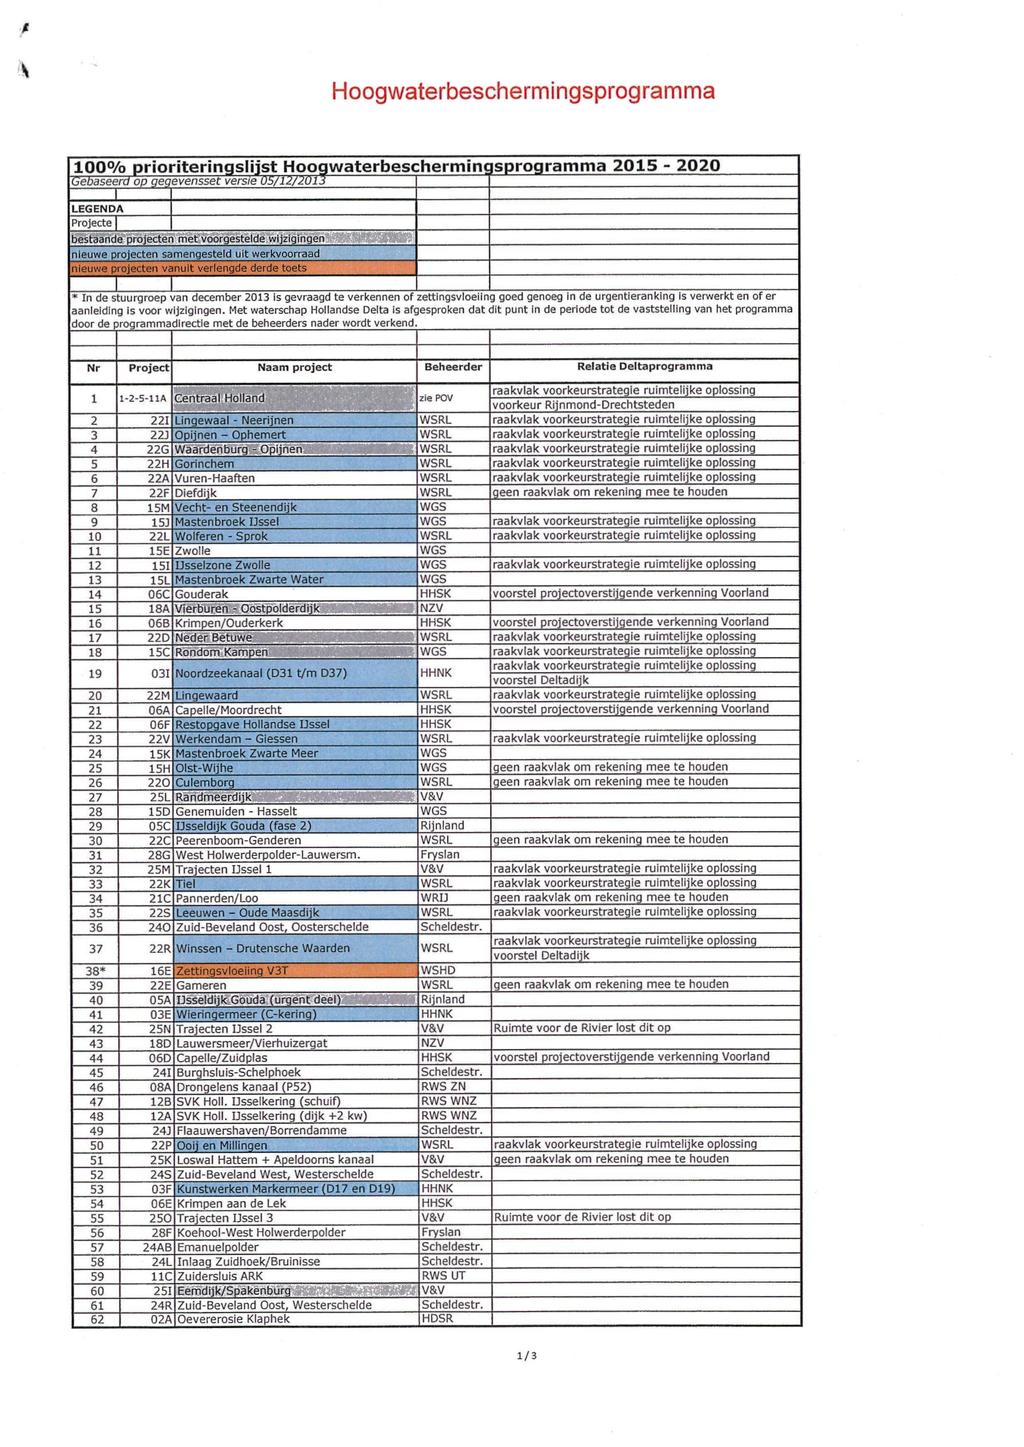 Hoogwaterbeschermingsprogramma 1 0 0 % prioriteringslijst Hog^waterbeschermincisprogramma 2015-2020 Gebaseerd op gegevensset versie LEGENDA Projecte bestaande projecten met voorgestelde wijzigingen